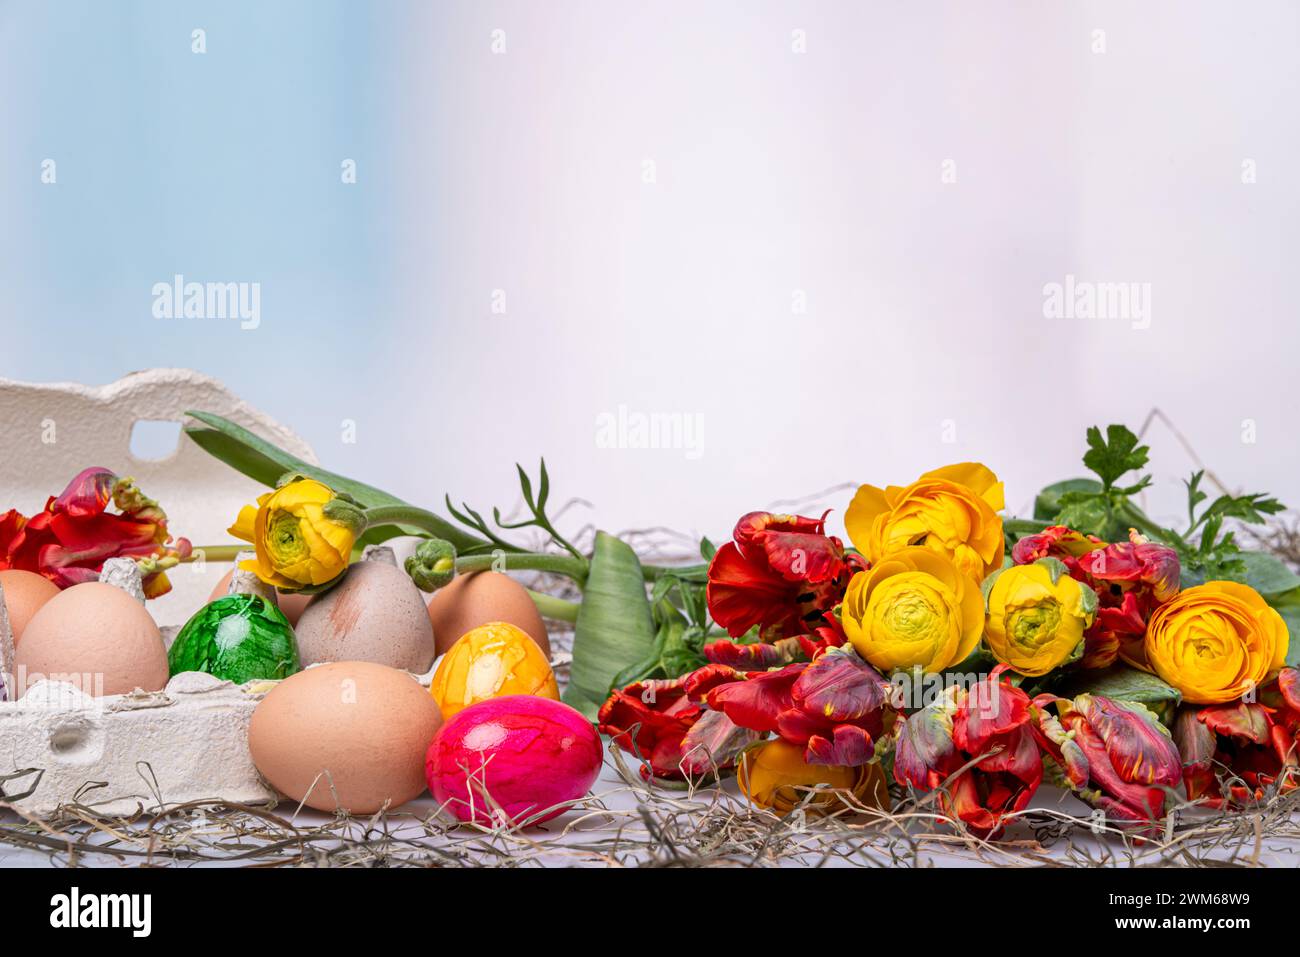 Bunte Ostereier auf einem Tisch mit Bumenstrauß als Postkartenmotiv zu Ostern Stock Photo